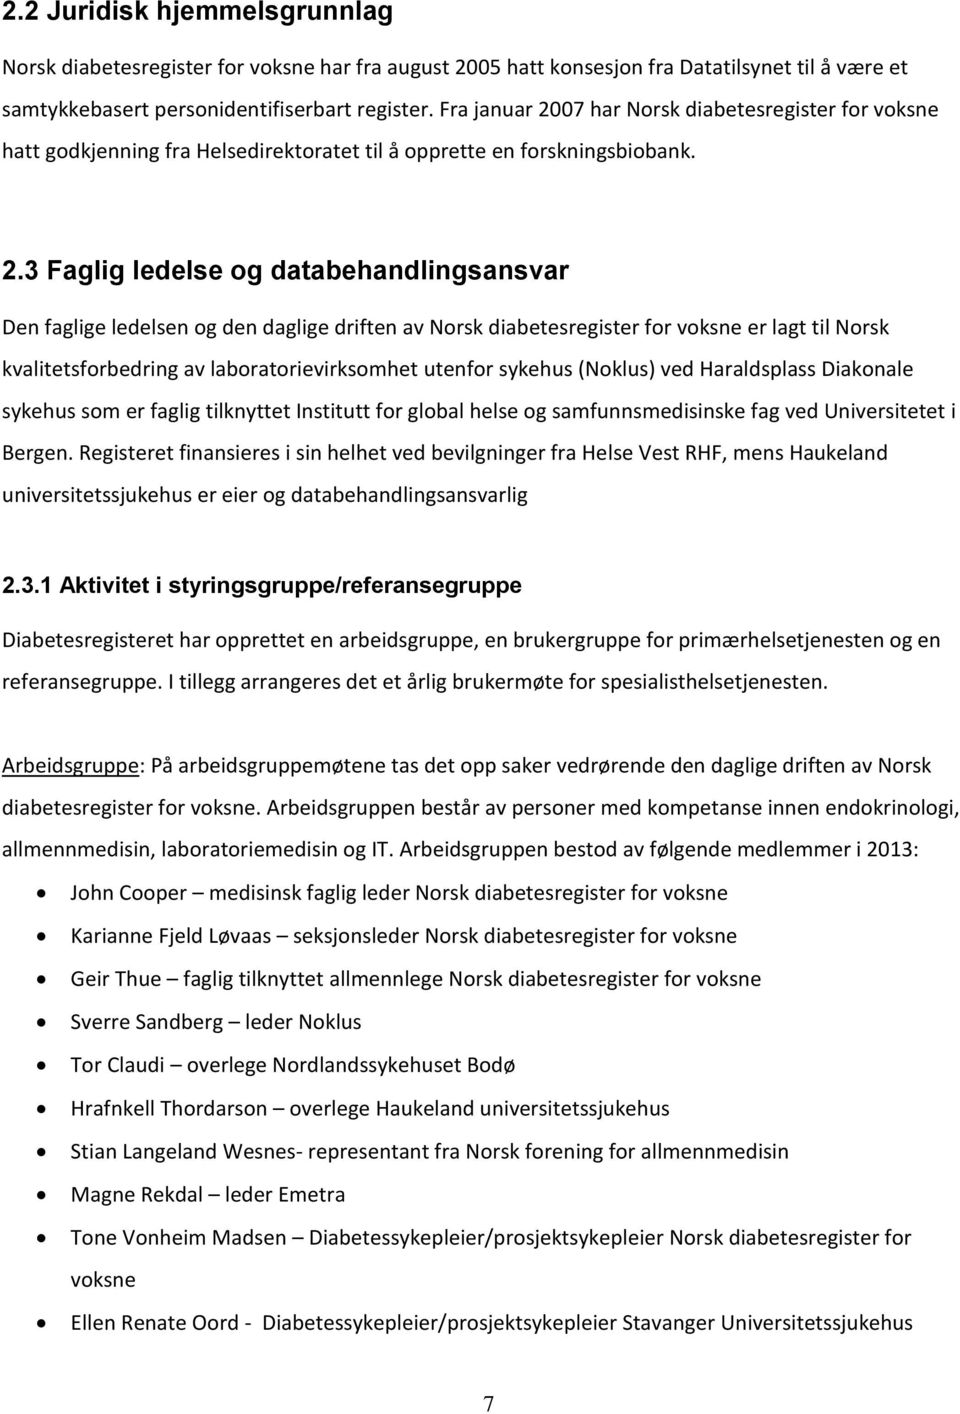 07 har Norsk diabetesregister for voksne hatt godkjenning fra Helsedirektoratet til å opprette en forskningsbiobank. 2.